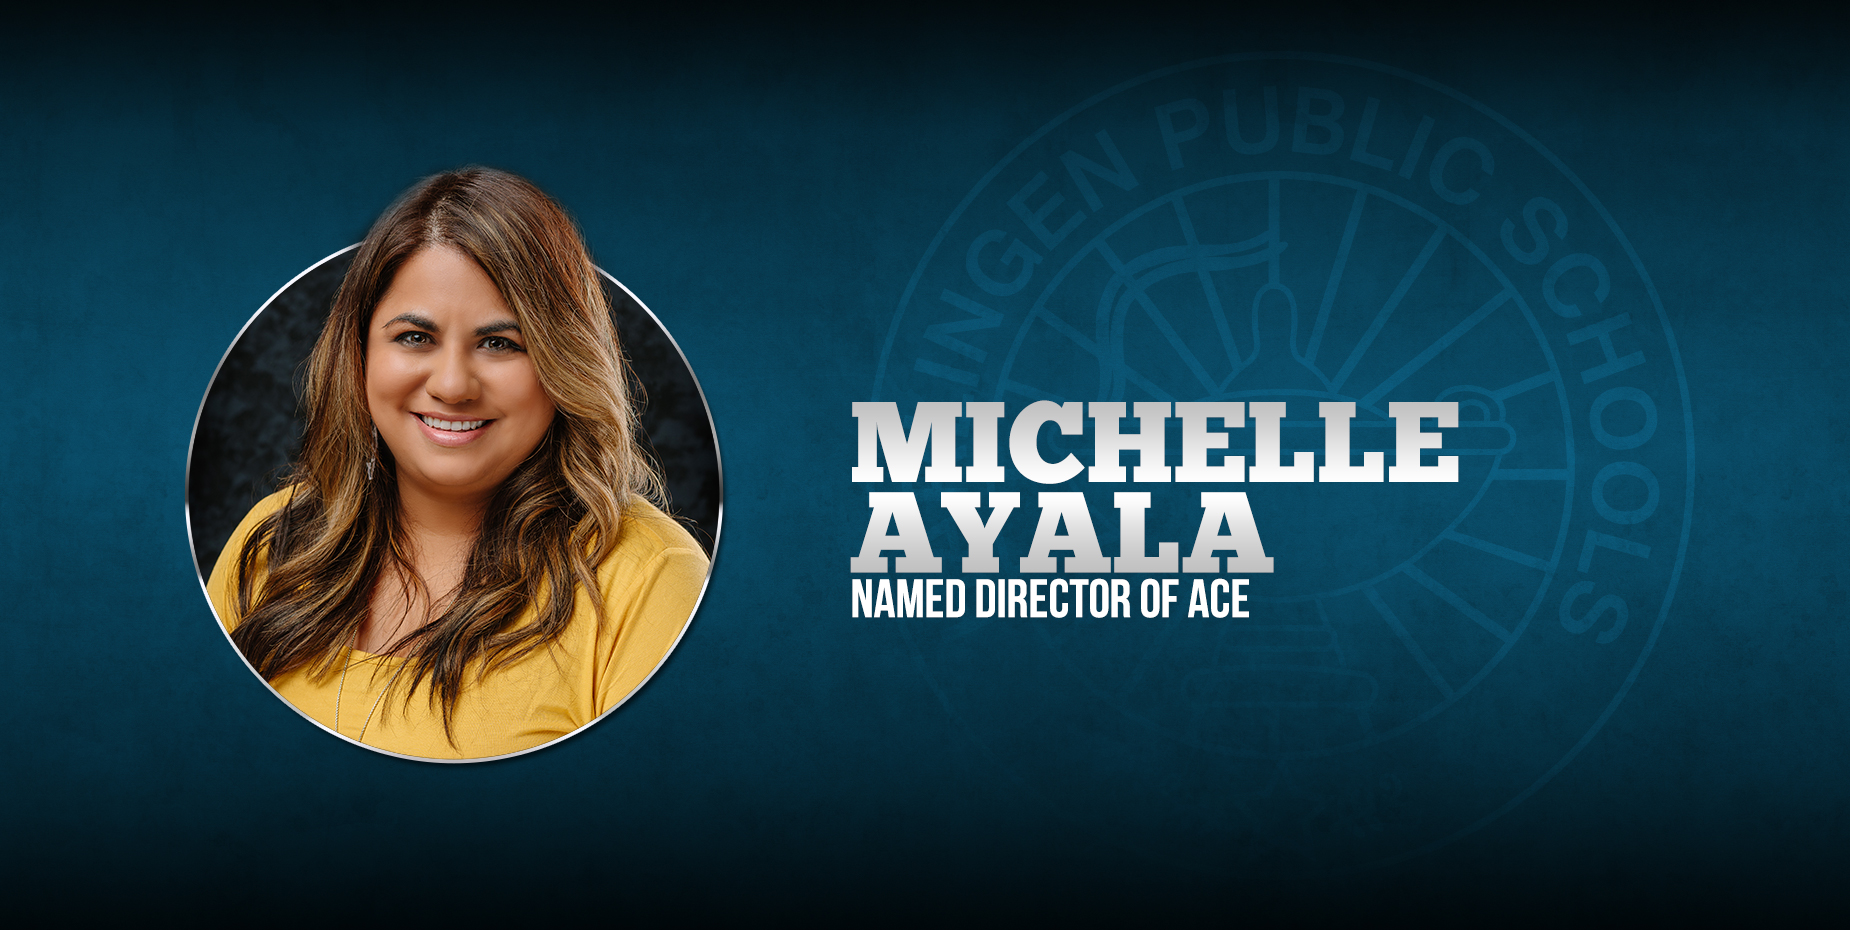 Michelle Ayala fue nombrada Directora de ACE.